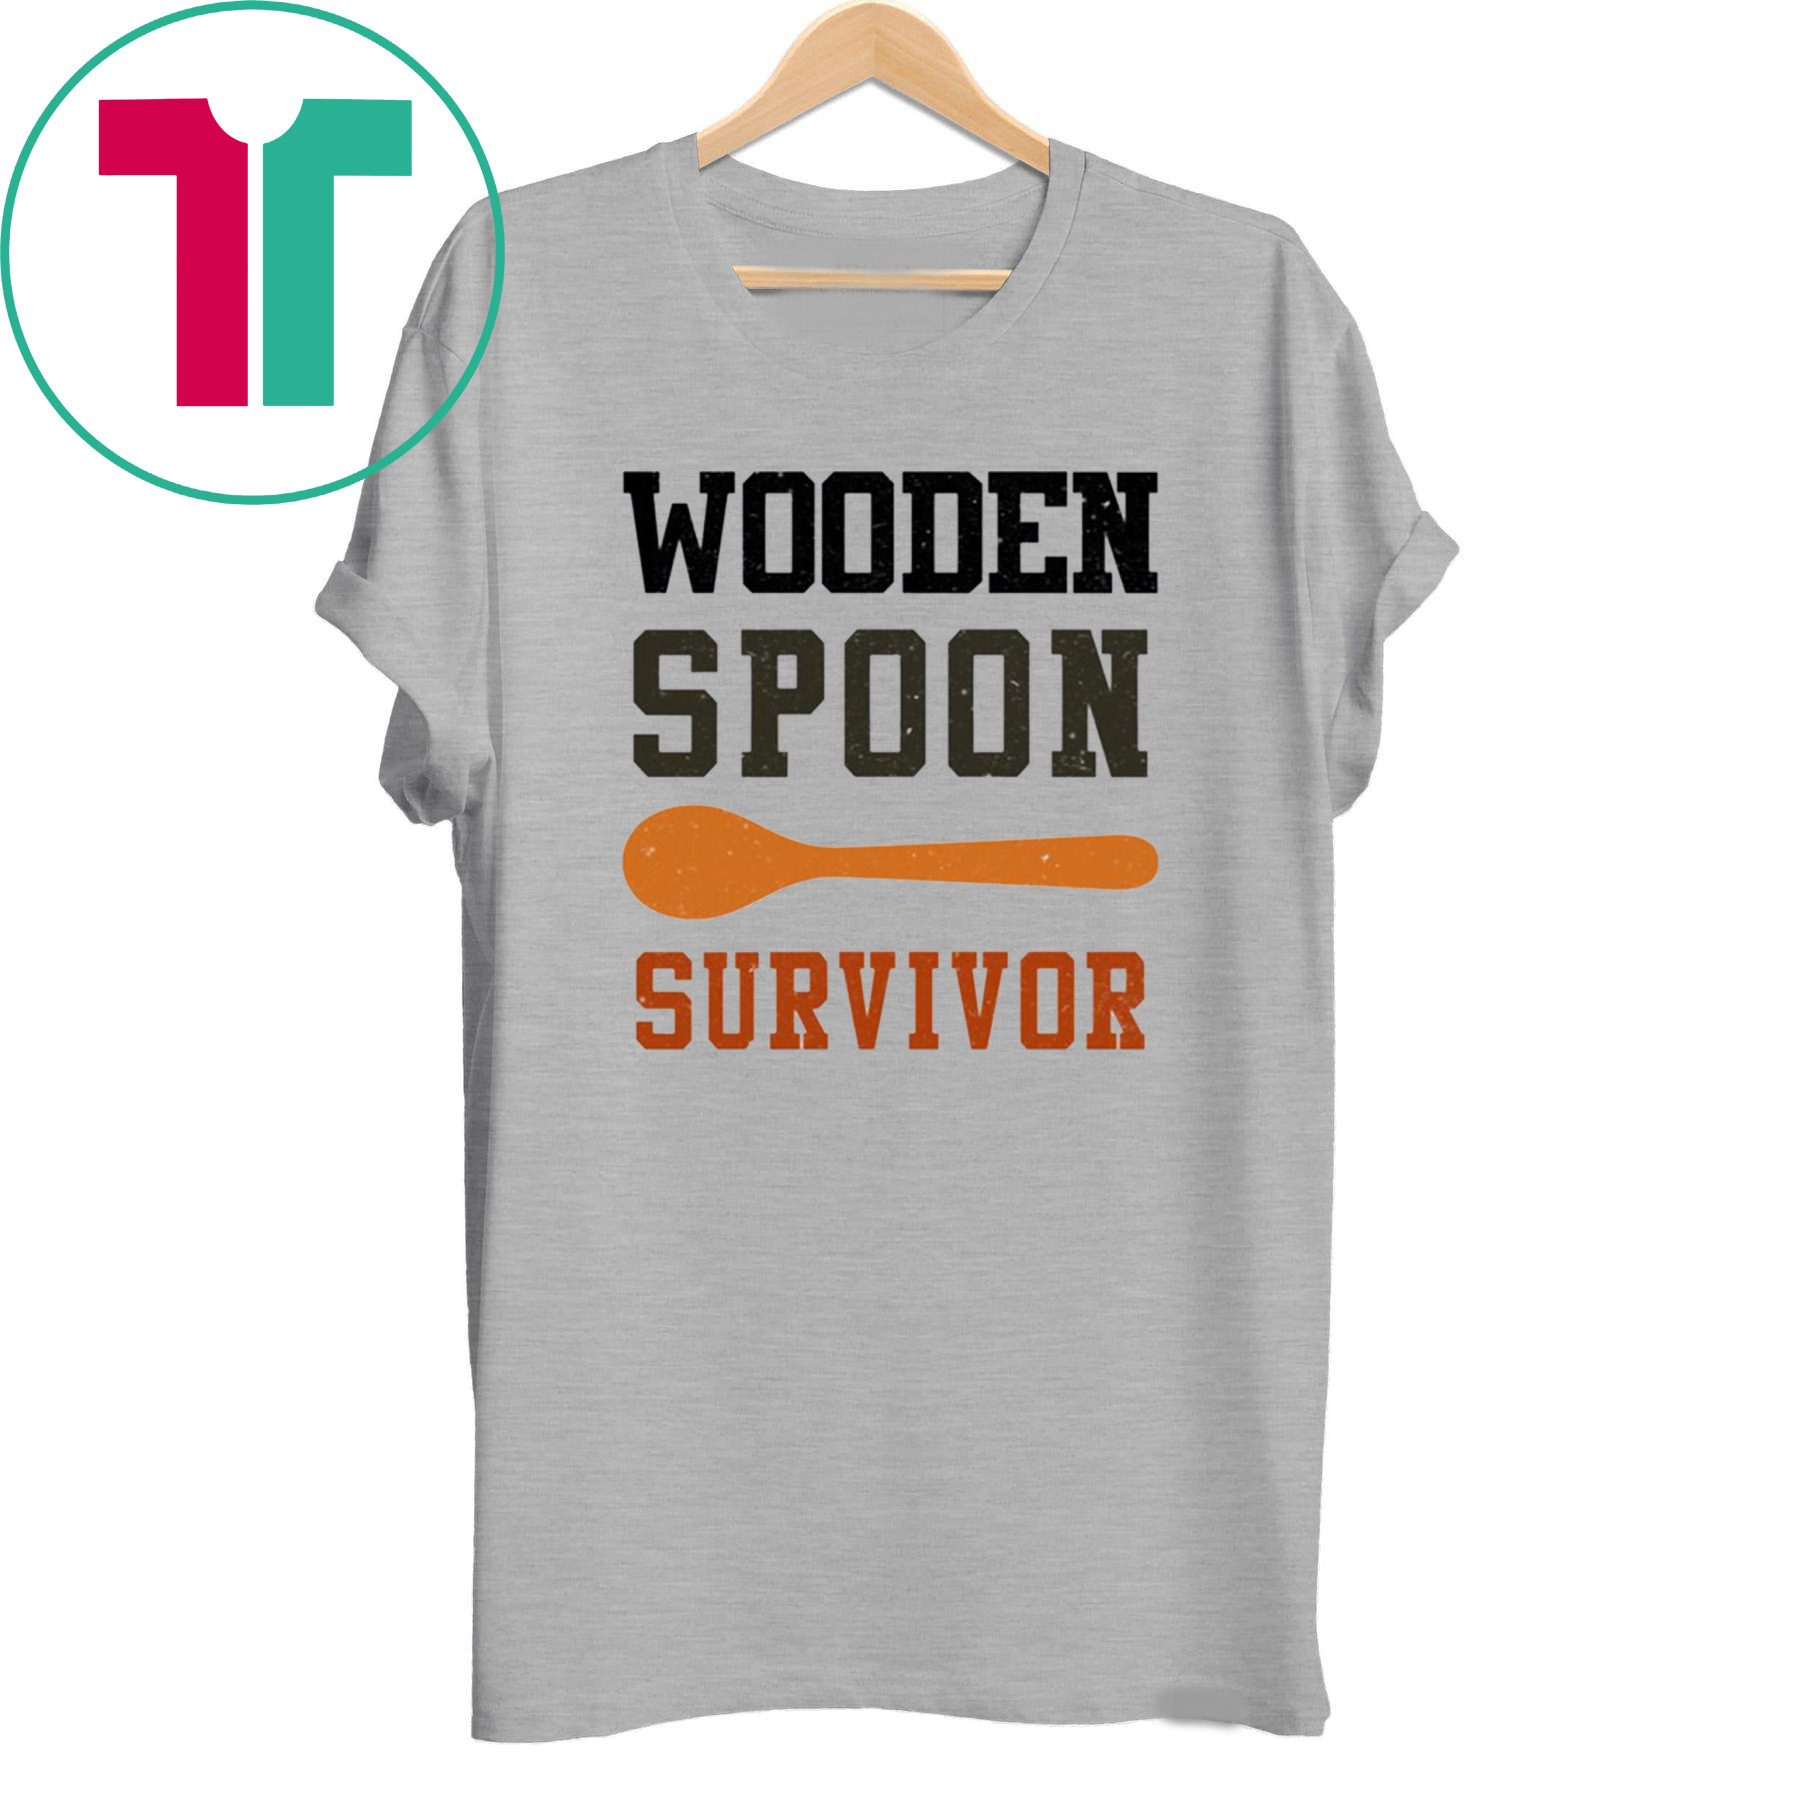 Wooden spoon survivor shirt